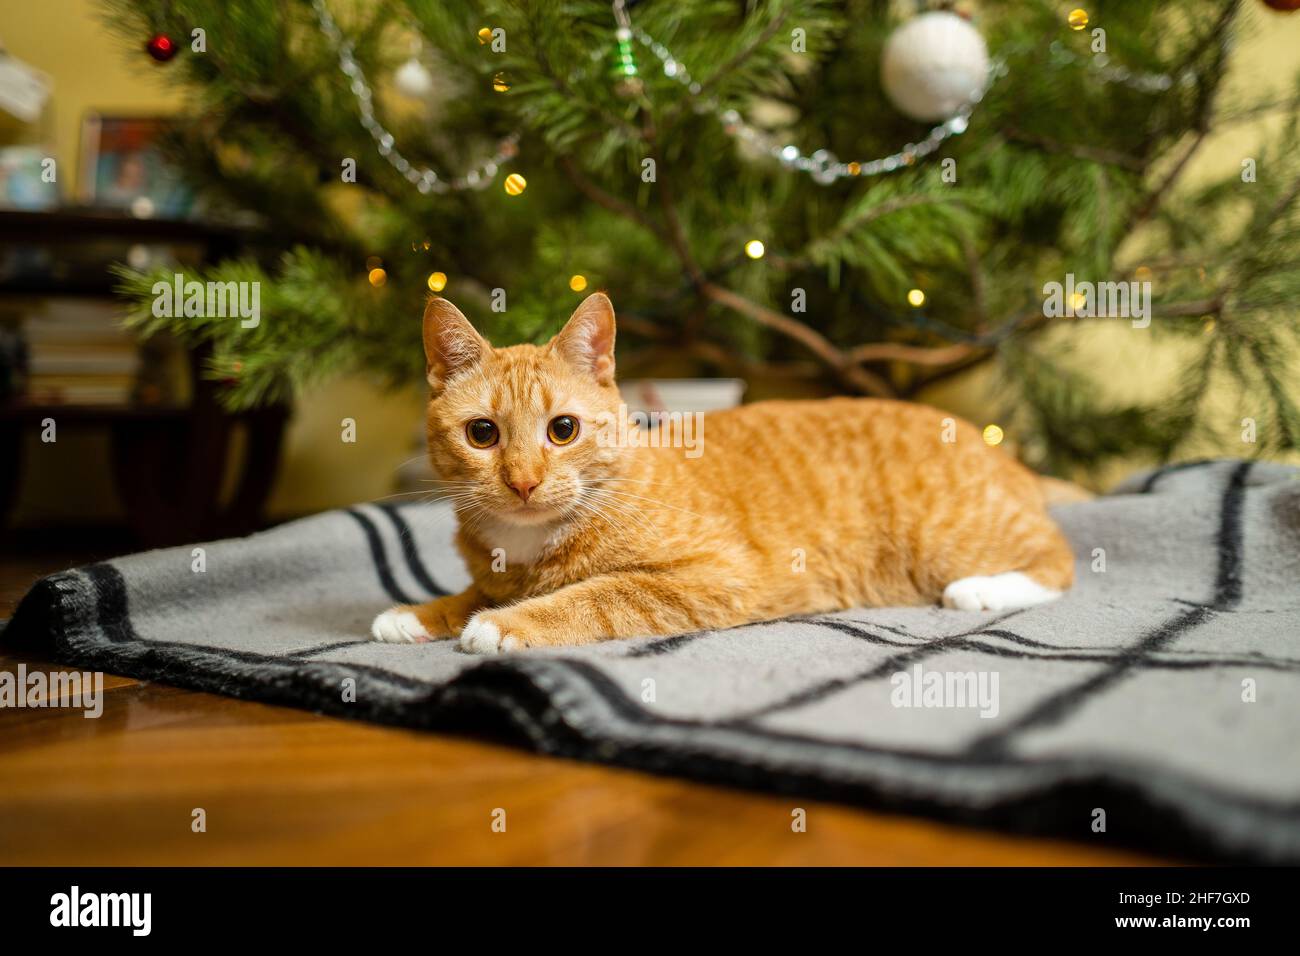 Le chat de gingembre heureux est assis sur un tissu écossais sous un sapin de Noël avec des décorations festives le réveillon du nouvel an.Un animal de compagnie aime sous le pin à la maison sur la planche de lit à l'intérieur Banque D'Images